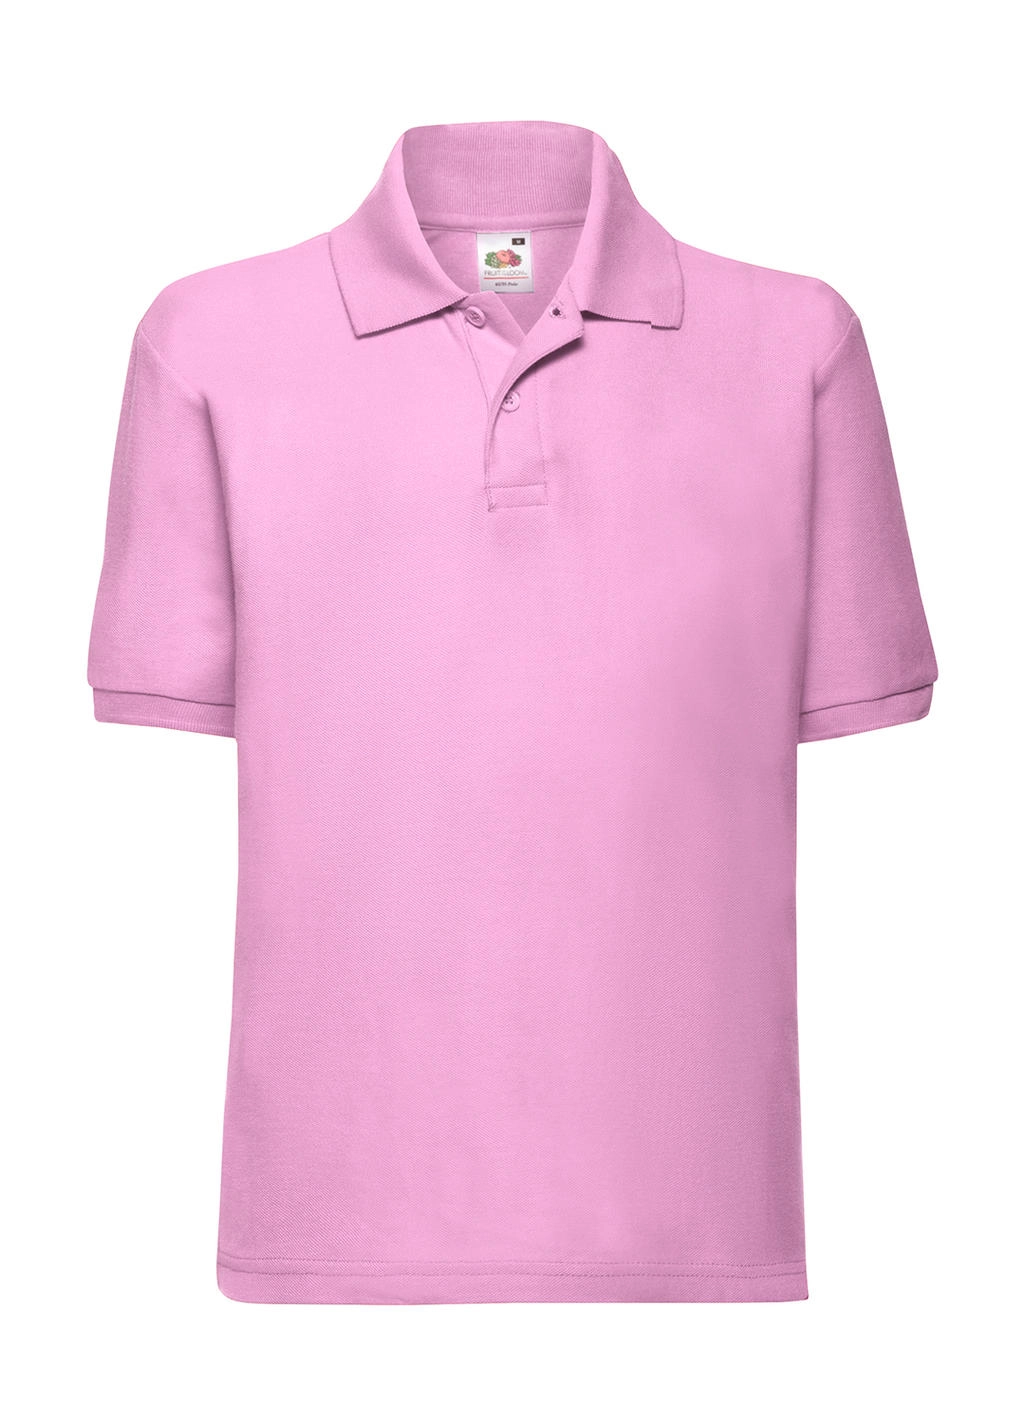 Kids` 65/35 Polo zum Besticken und Bedrucken in der Farbe Light Pink mit Ihren Logo, Schriftzug oder Motiv.